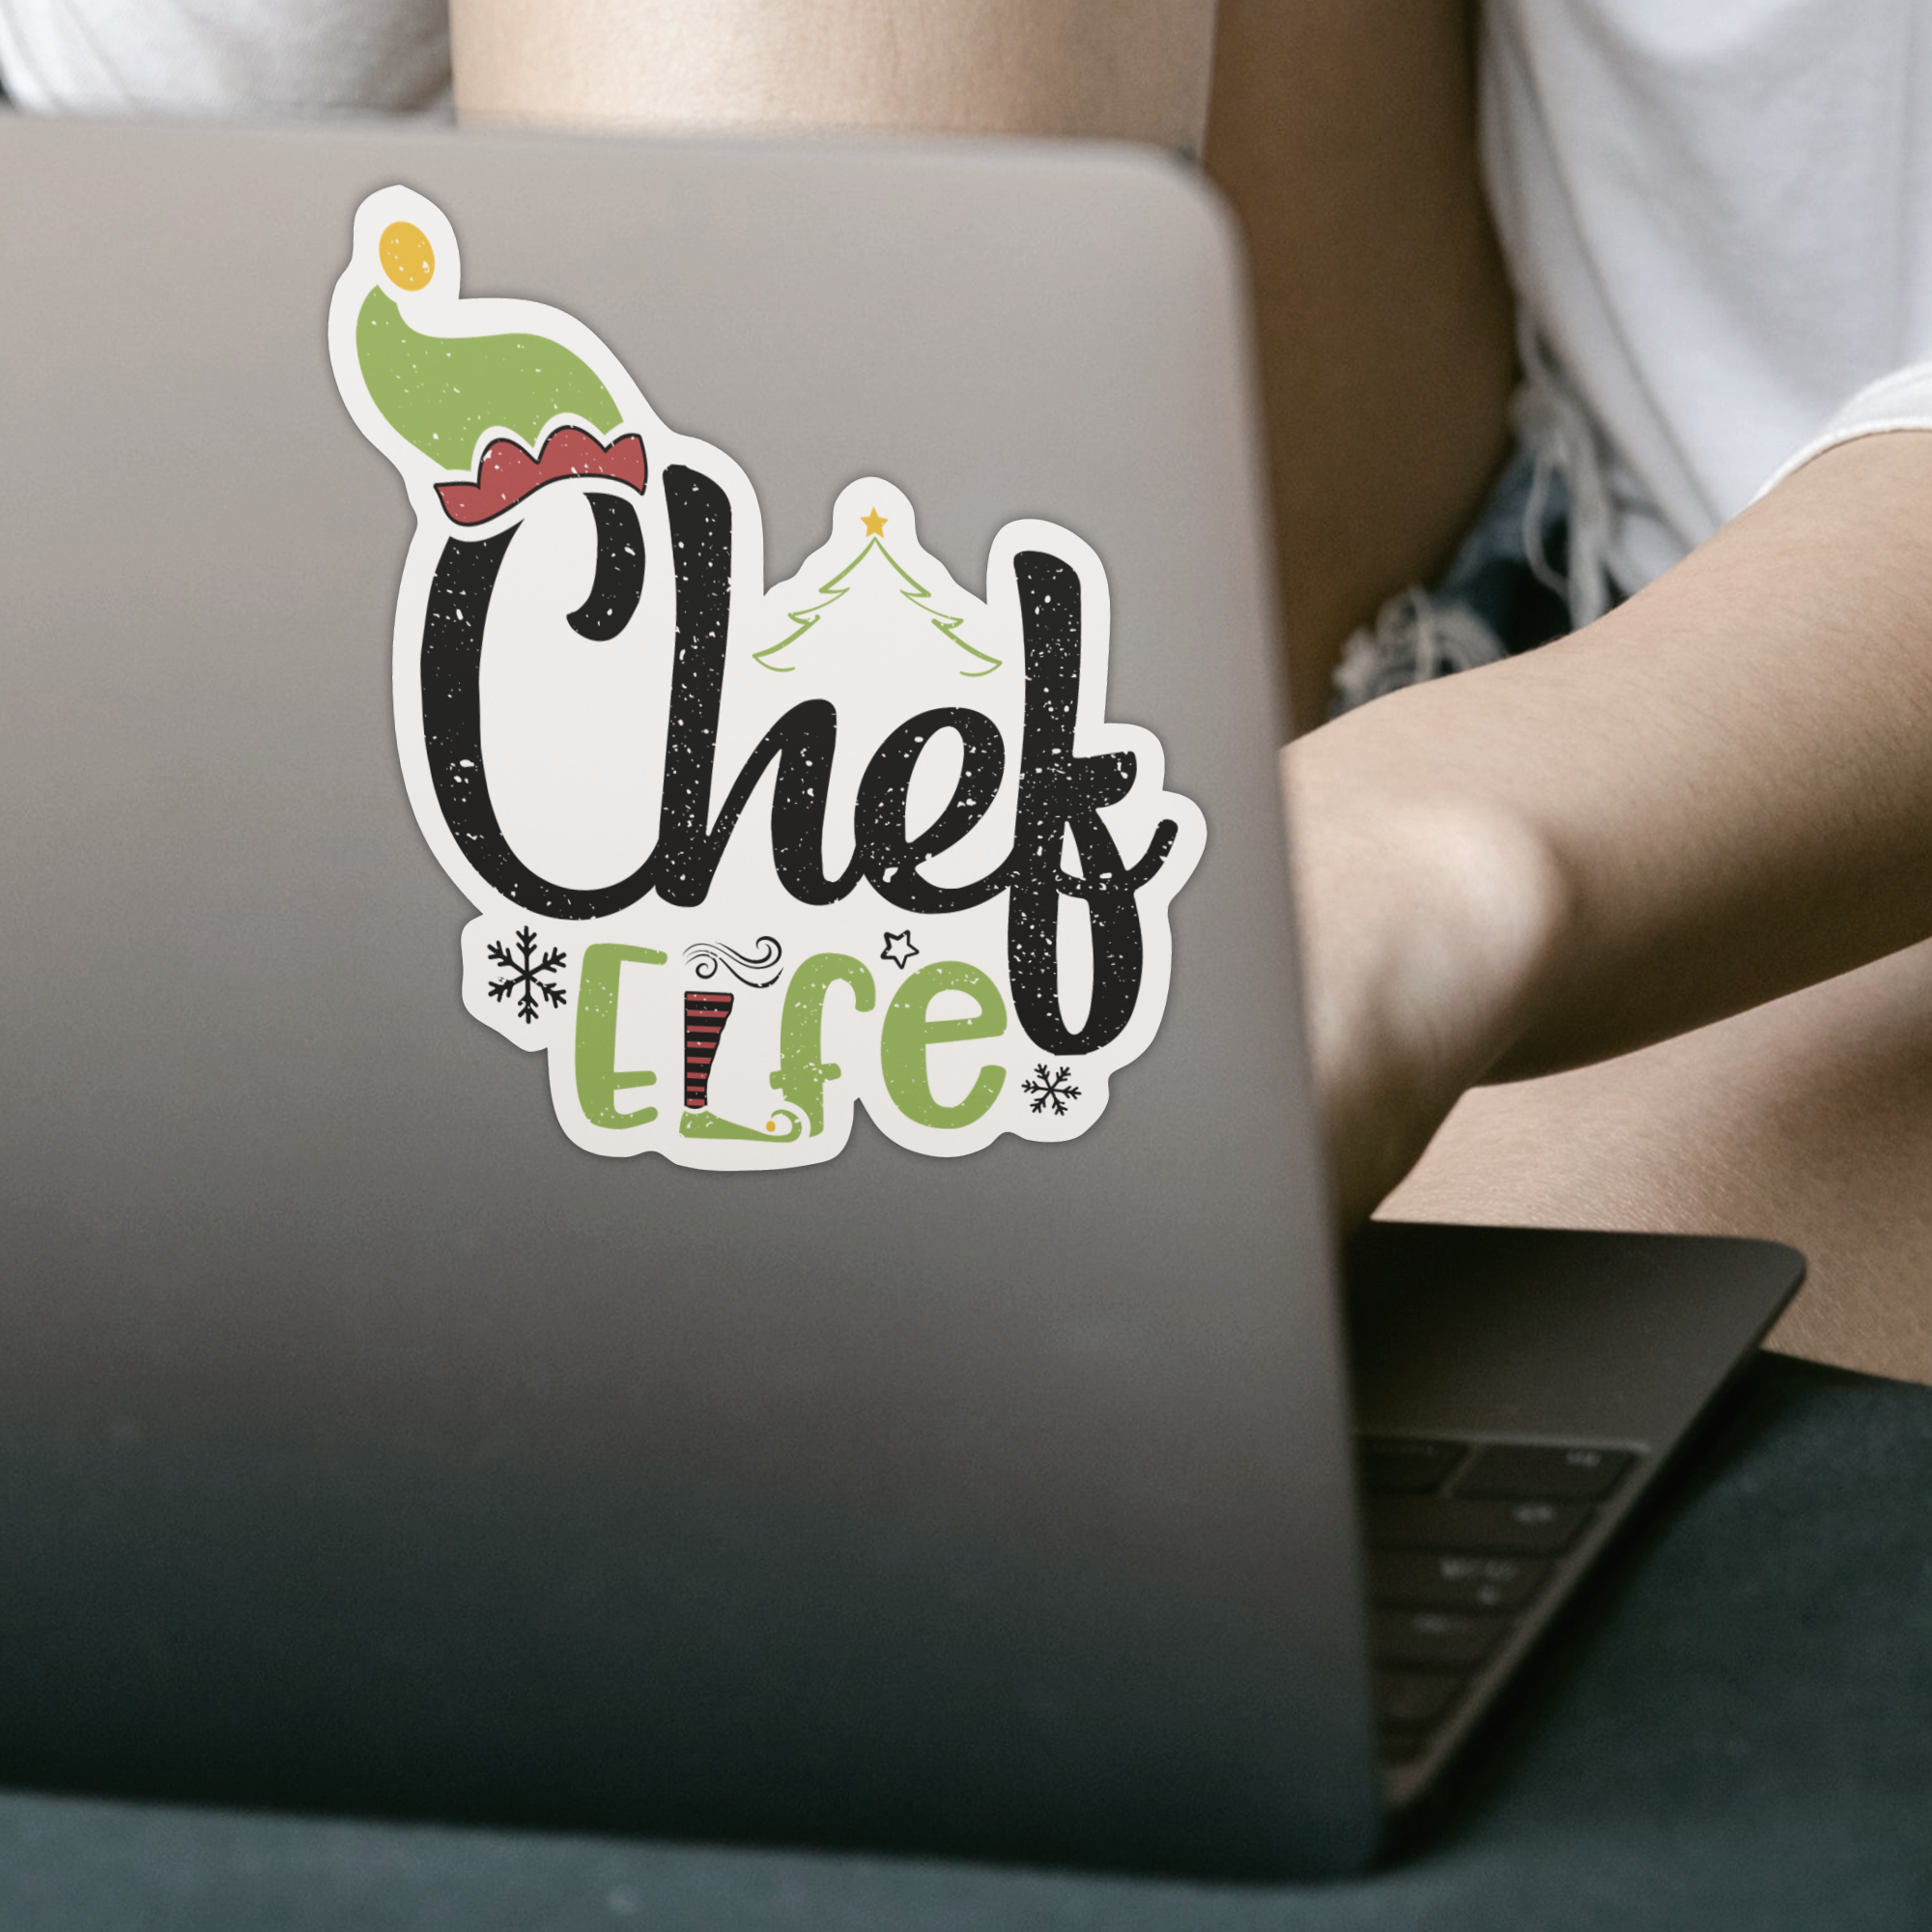 Chef Elfe Sticker - DESIGNSBYJNK5.COM